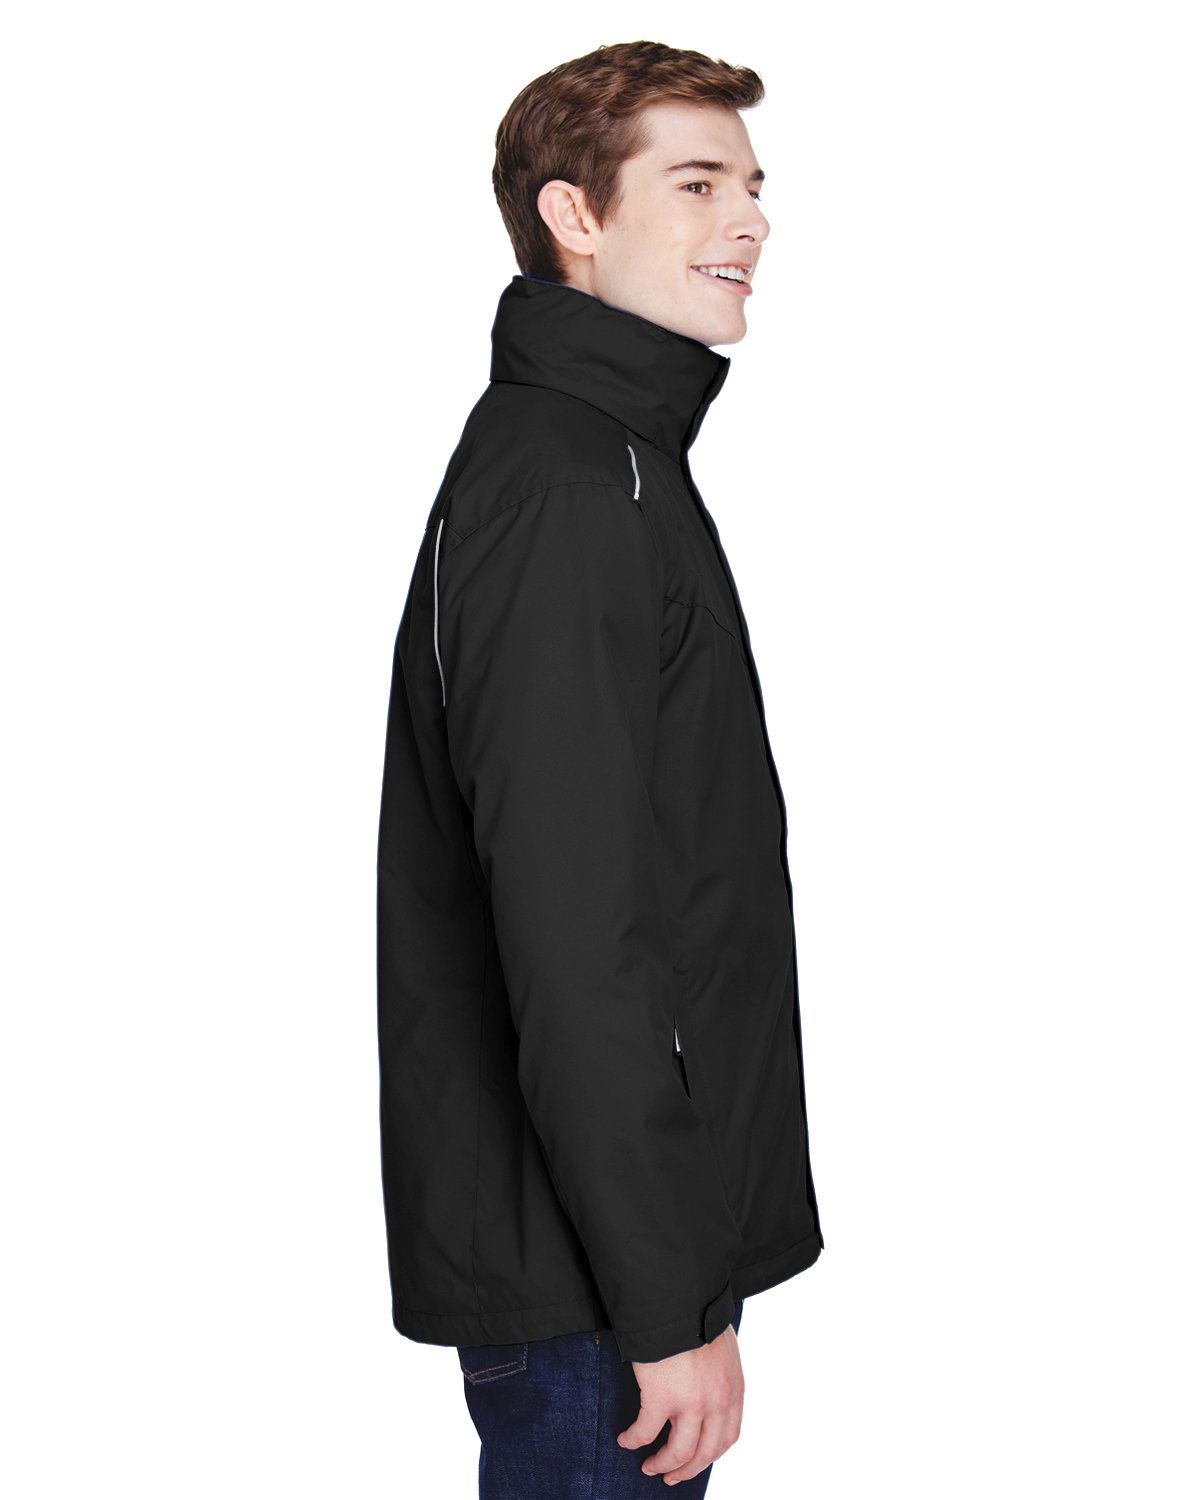 'Core365 88205 Region Men's 3 In 1 Jacket with Fleece Liner'